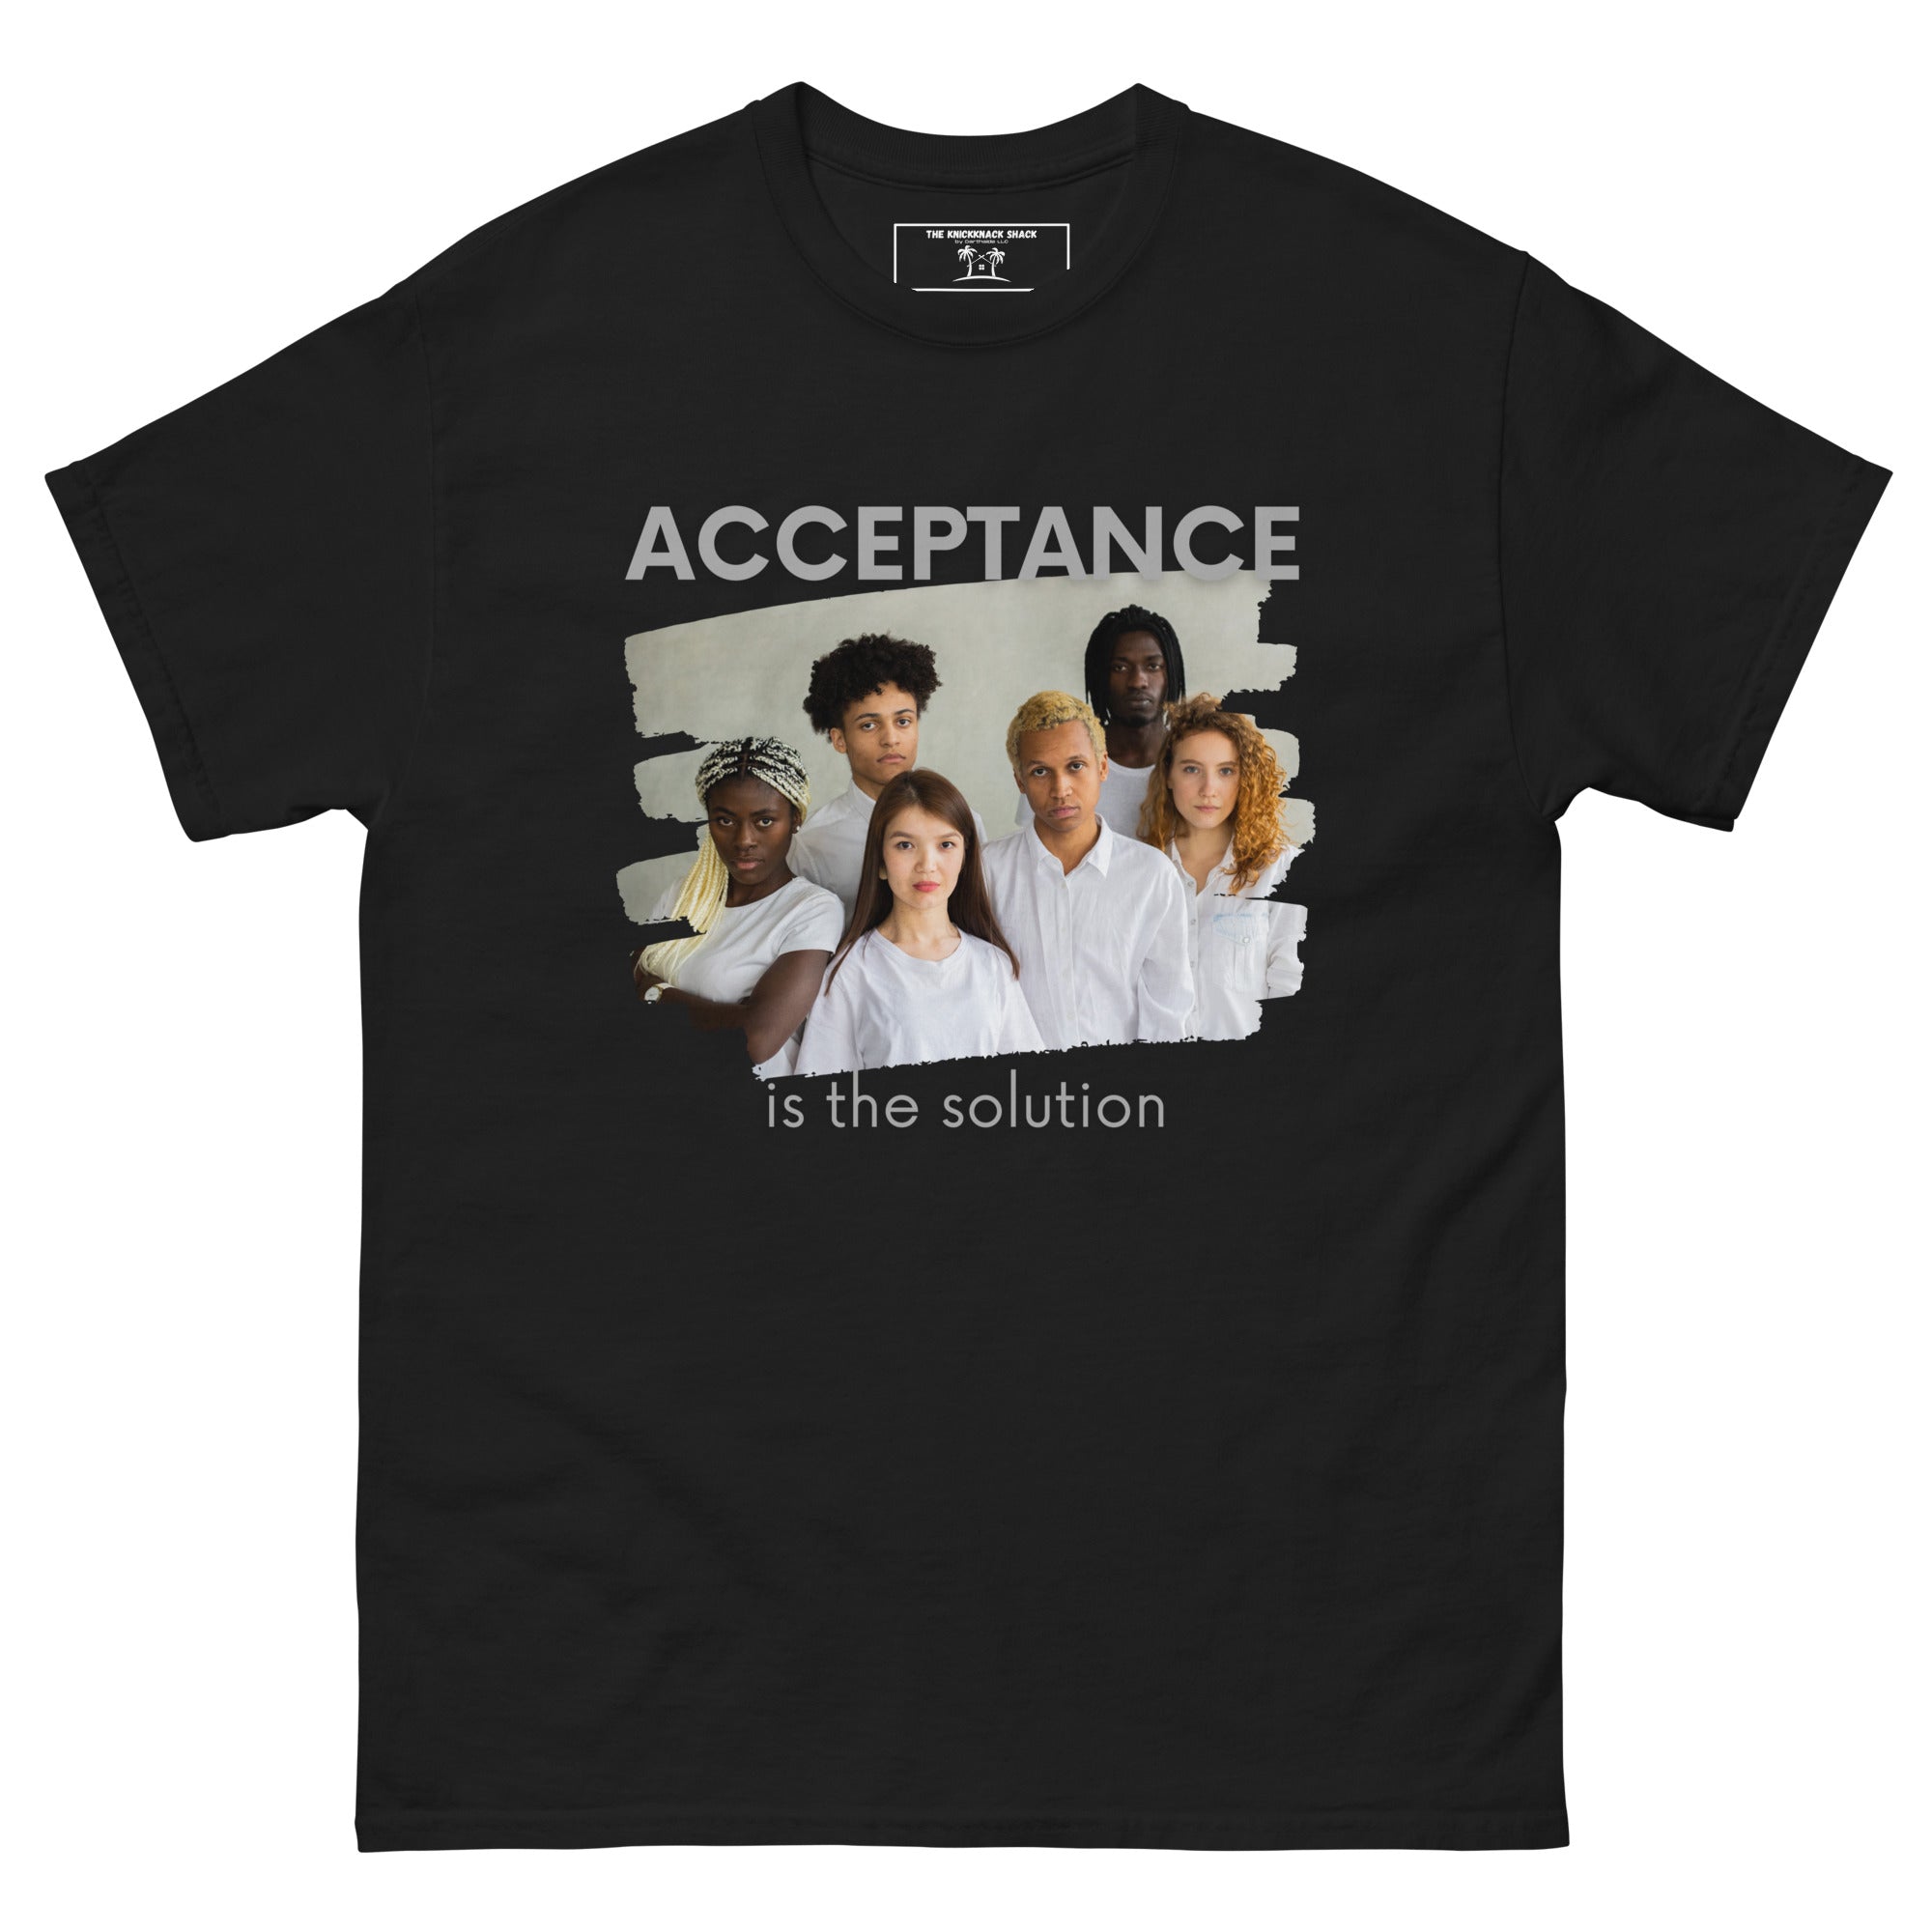 Tee-shirt classique - Acceptation (couleurs sombres)